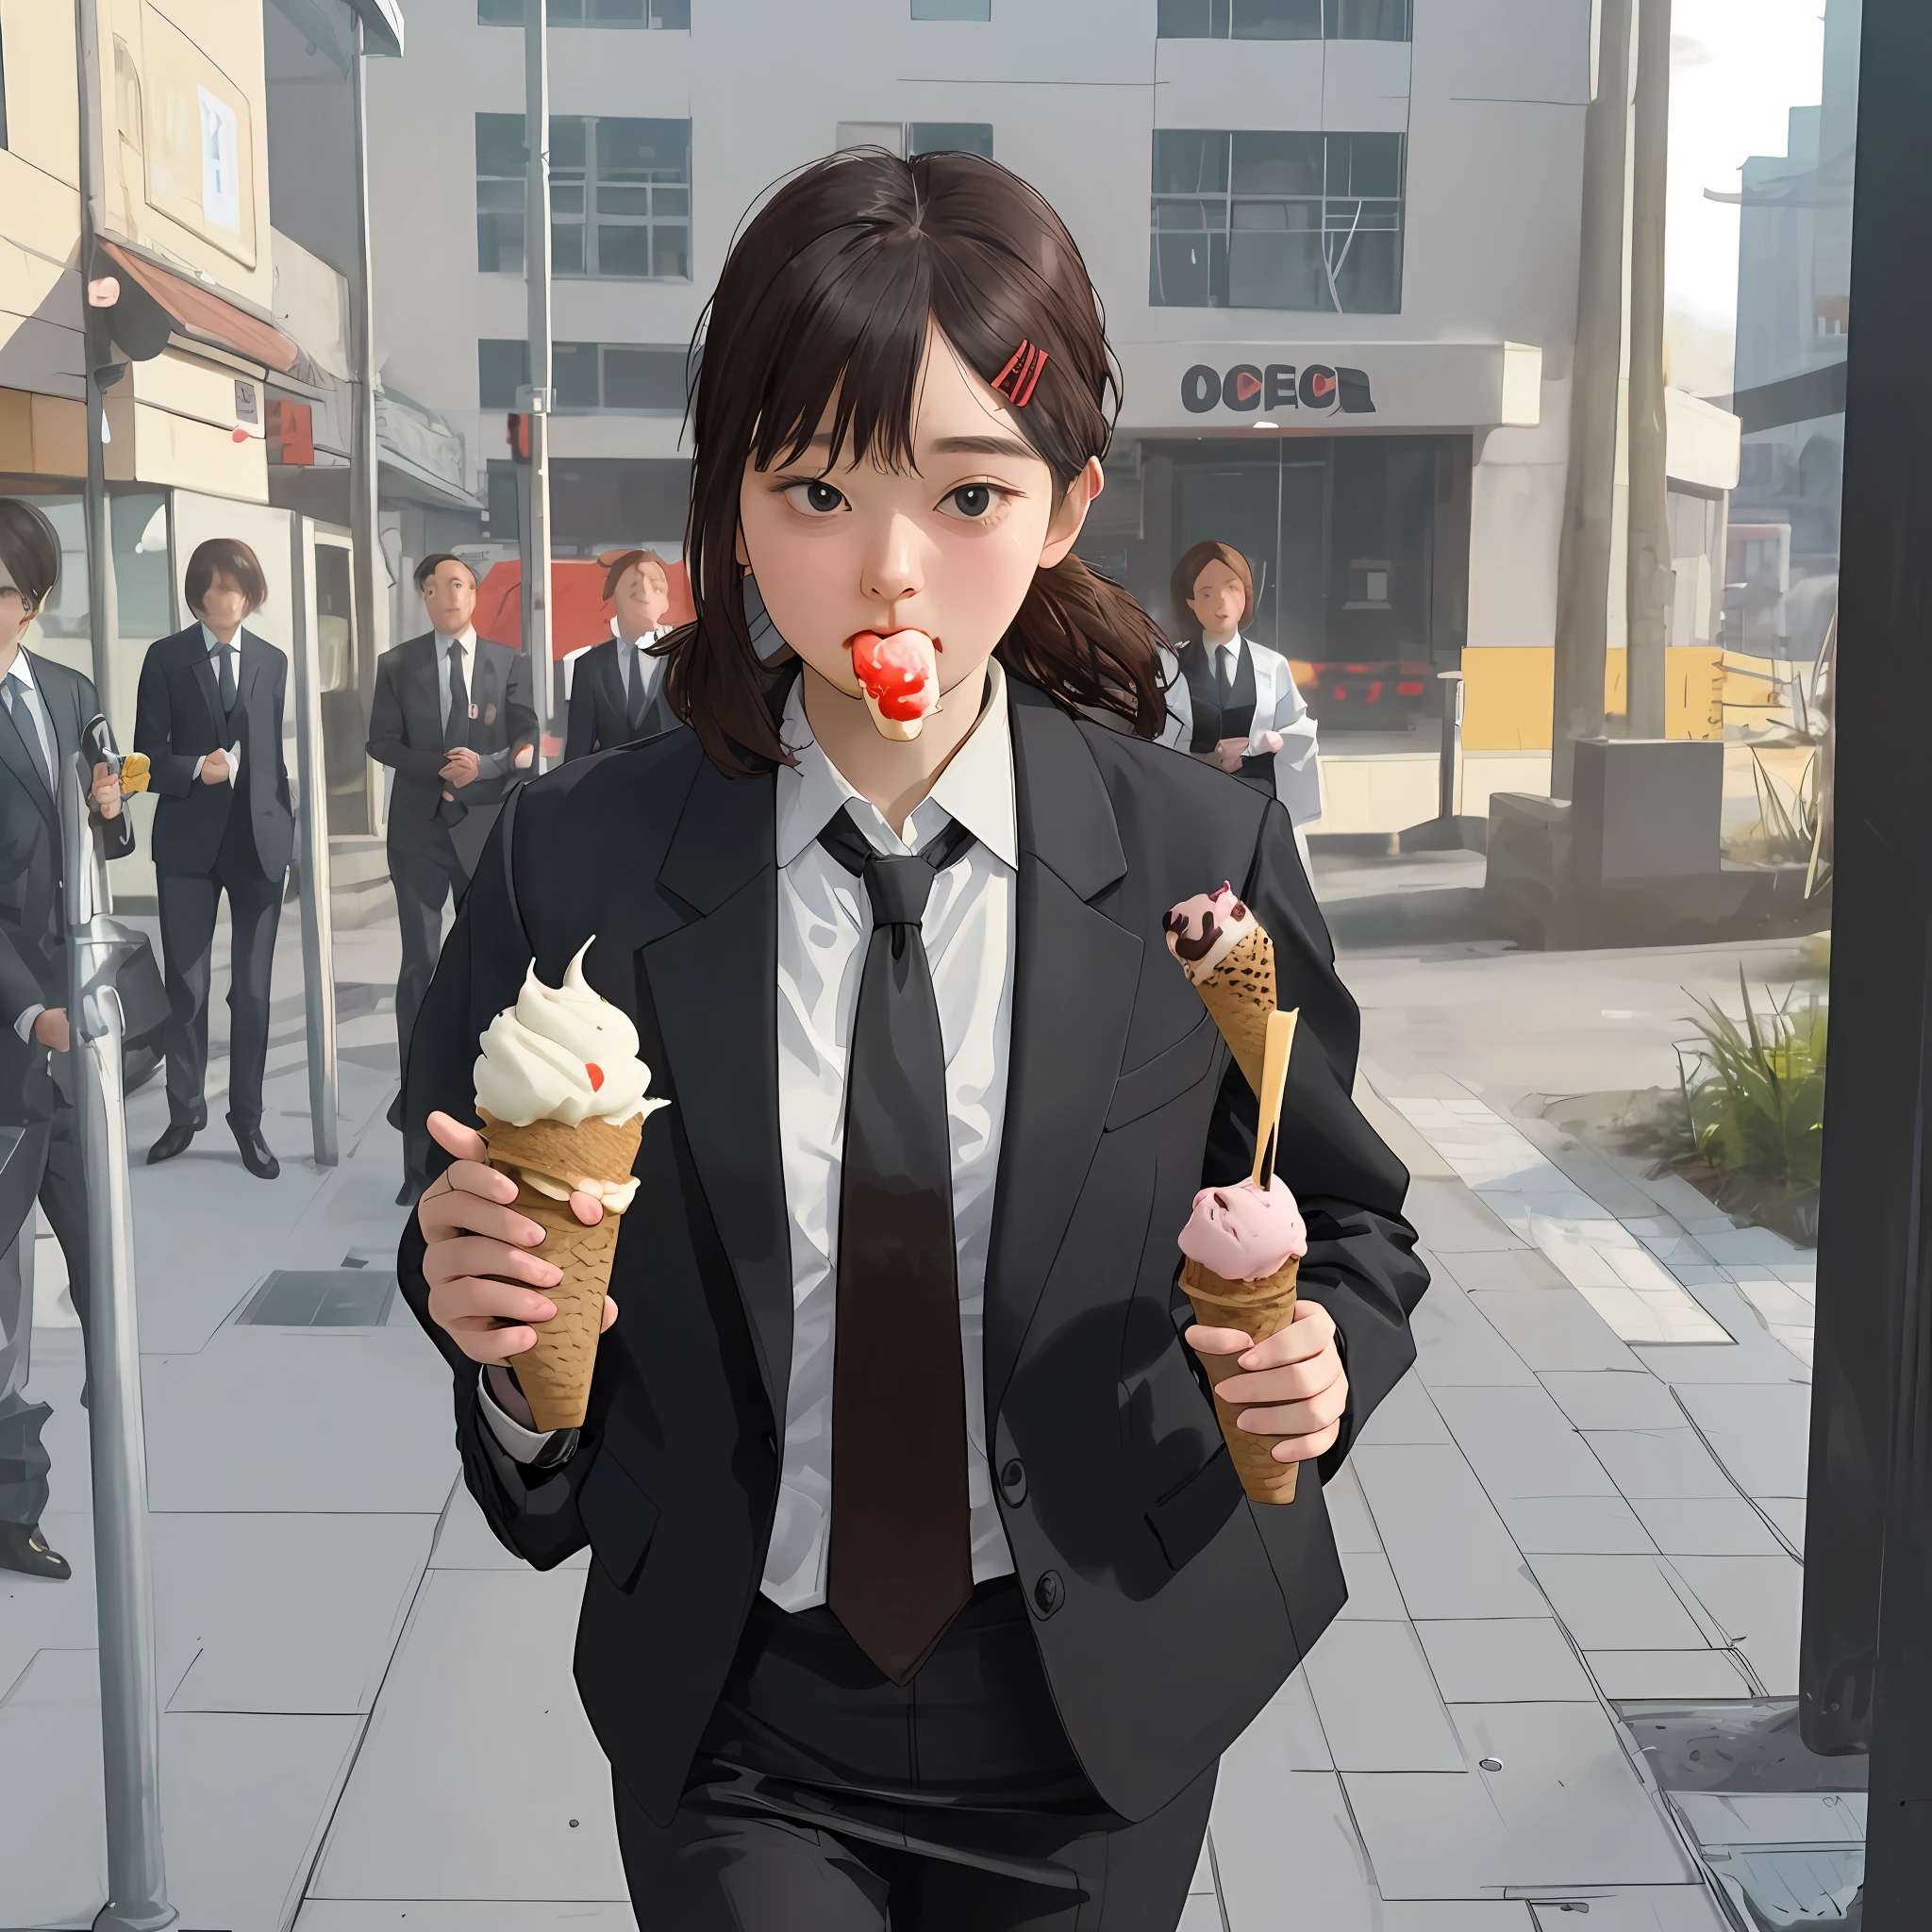 (1 Mädchen) schüchtern ein Eis essen, Einen Büroanzug tragen, Jacke und Krawatte, durch die Straßen gehen, Super detailliert, Hochauflösend.